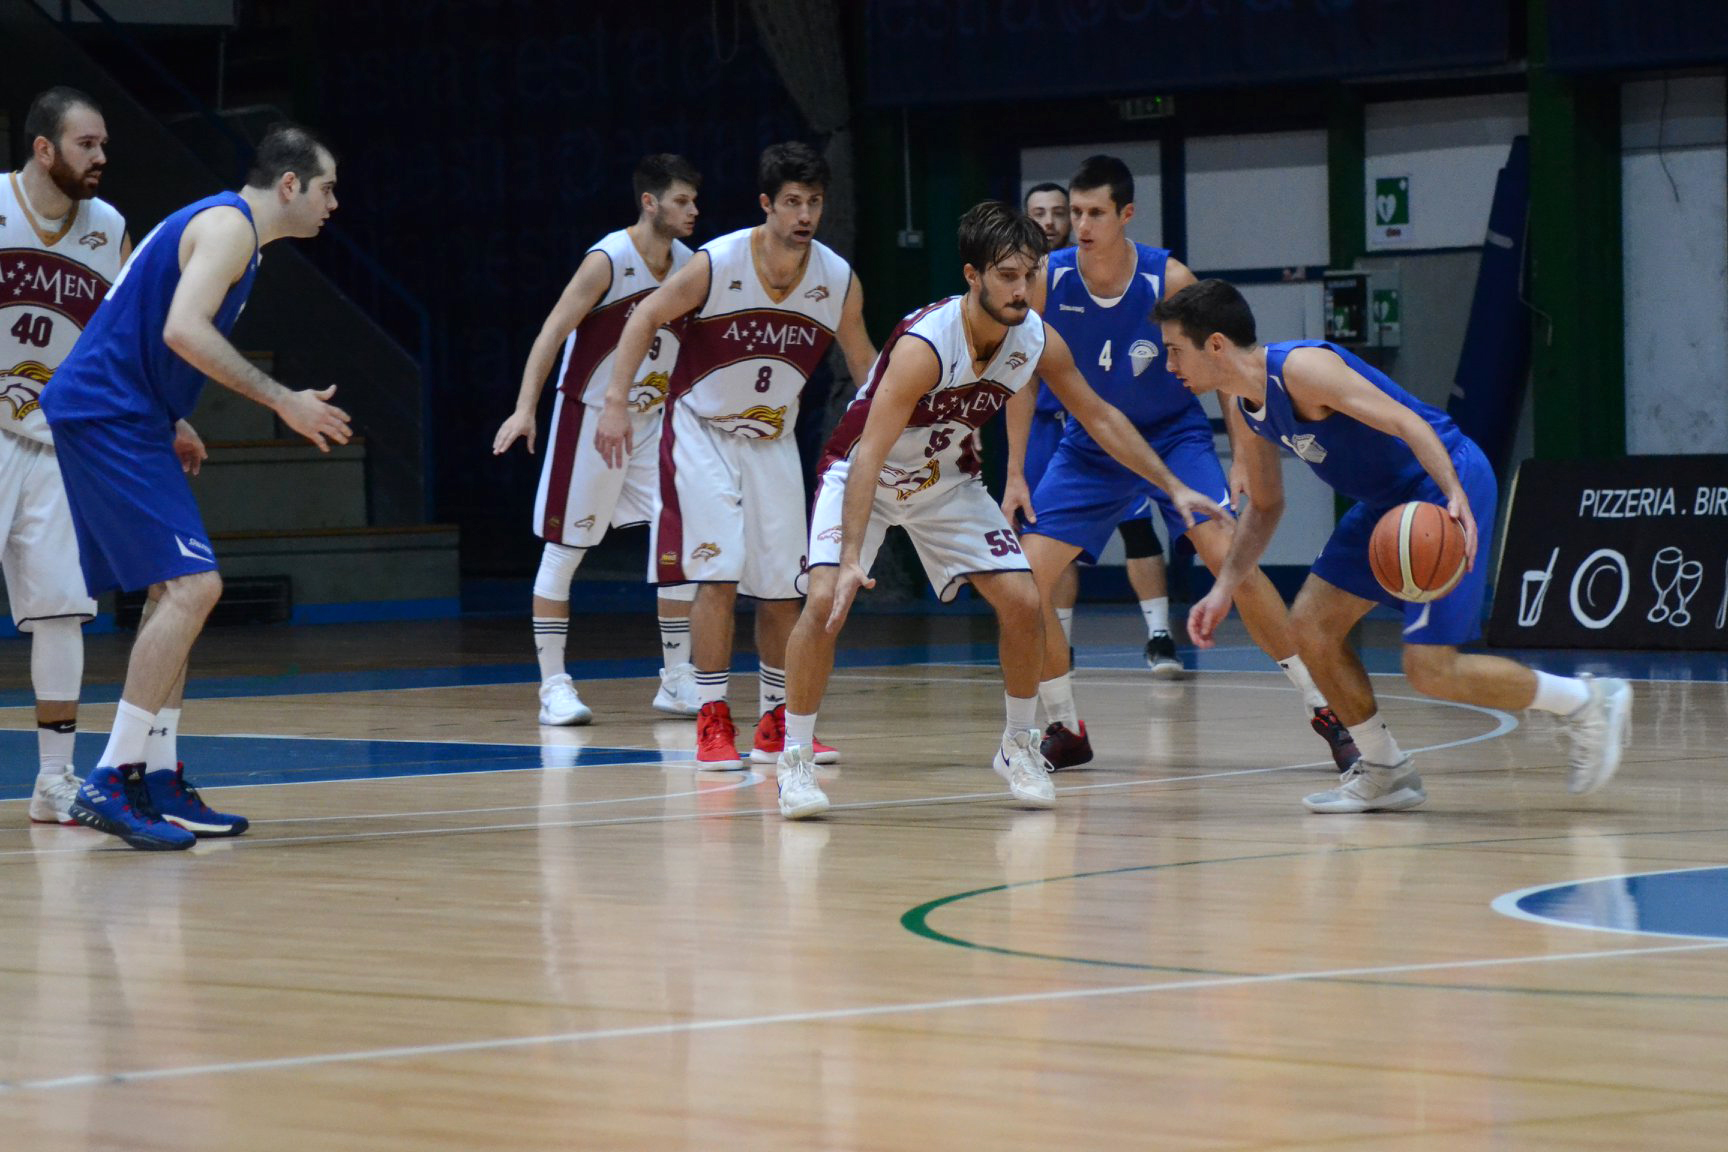 L’Amen Scuola Basket Arezzo impegnata nella Final Four di Coppa Toscana